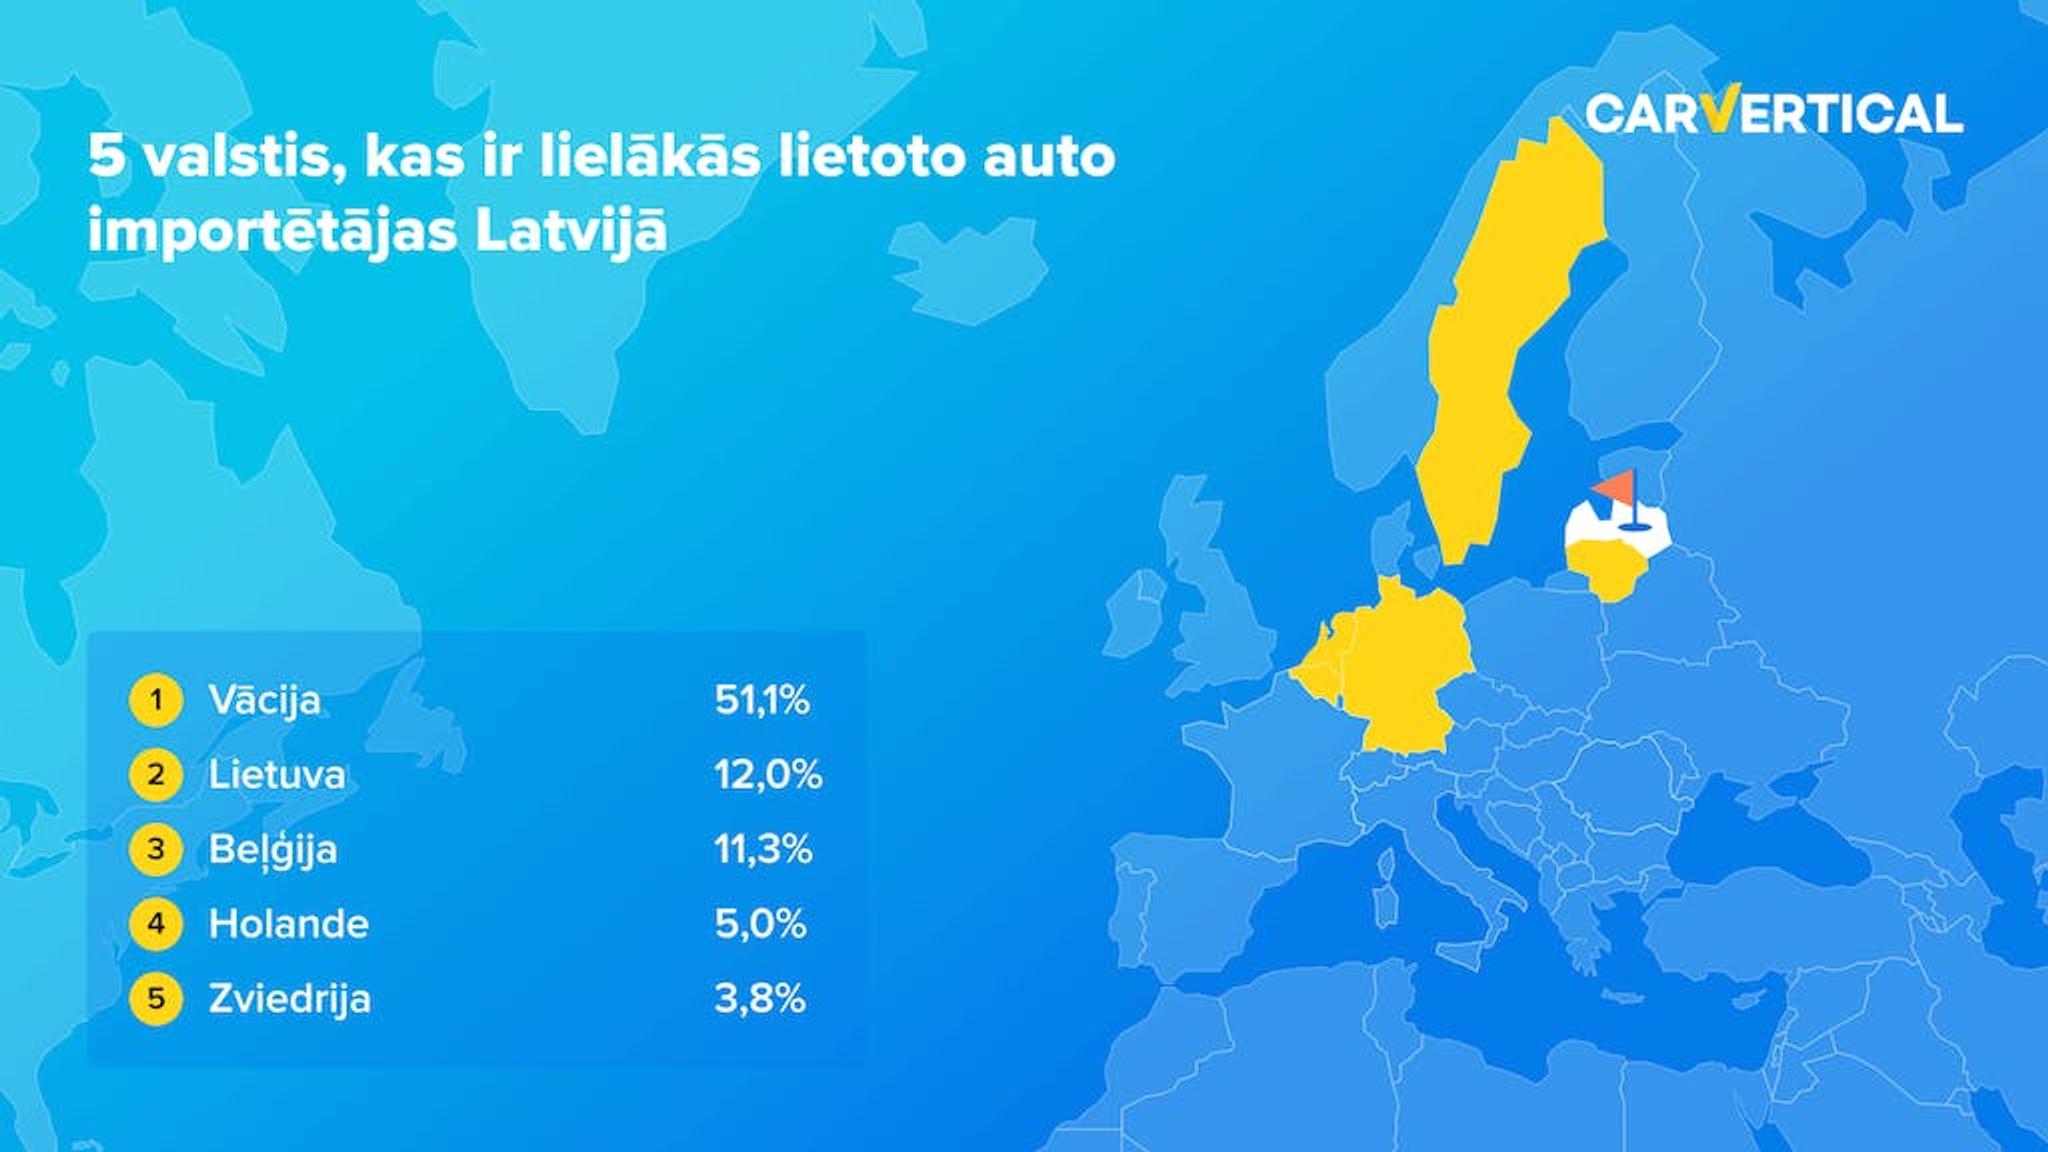 5 valstis, kas ir lielakas lietoto auto importetejas Latvija